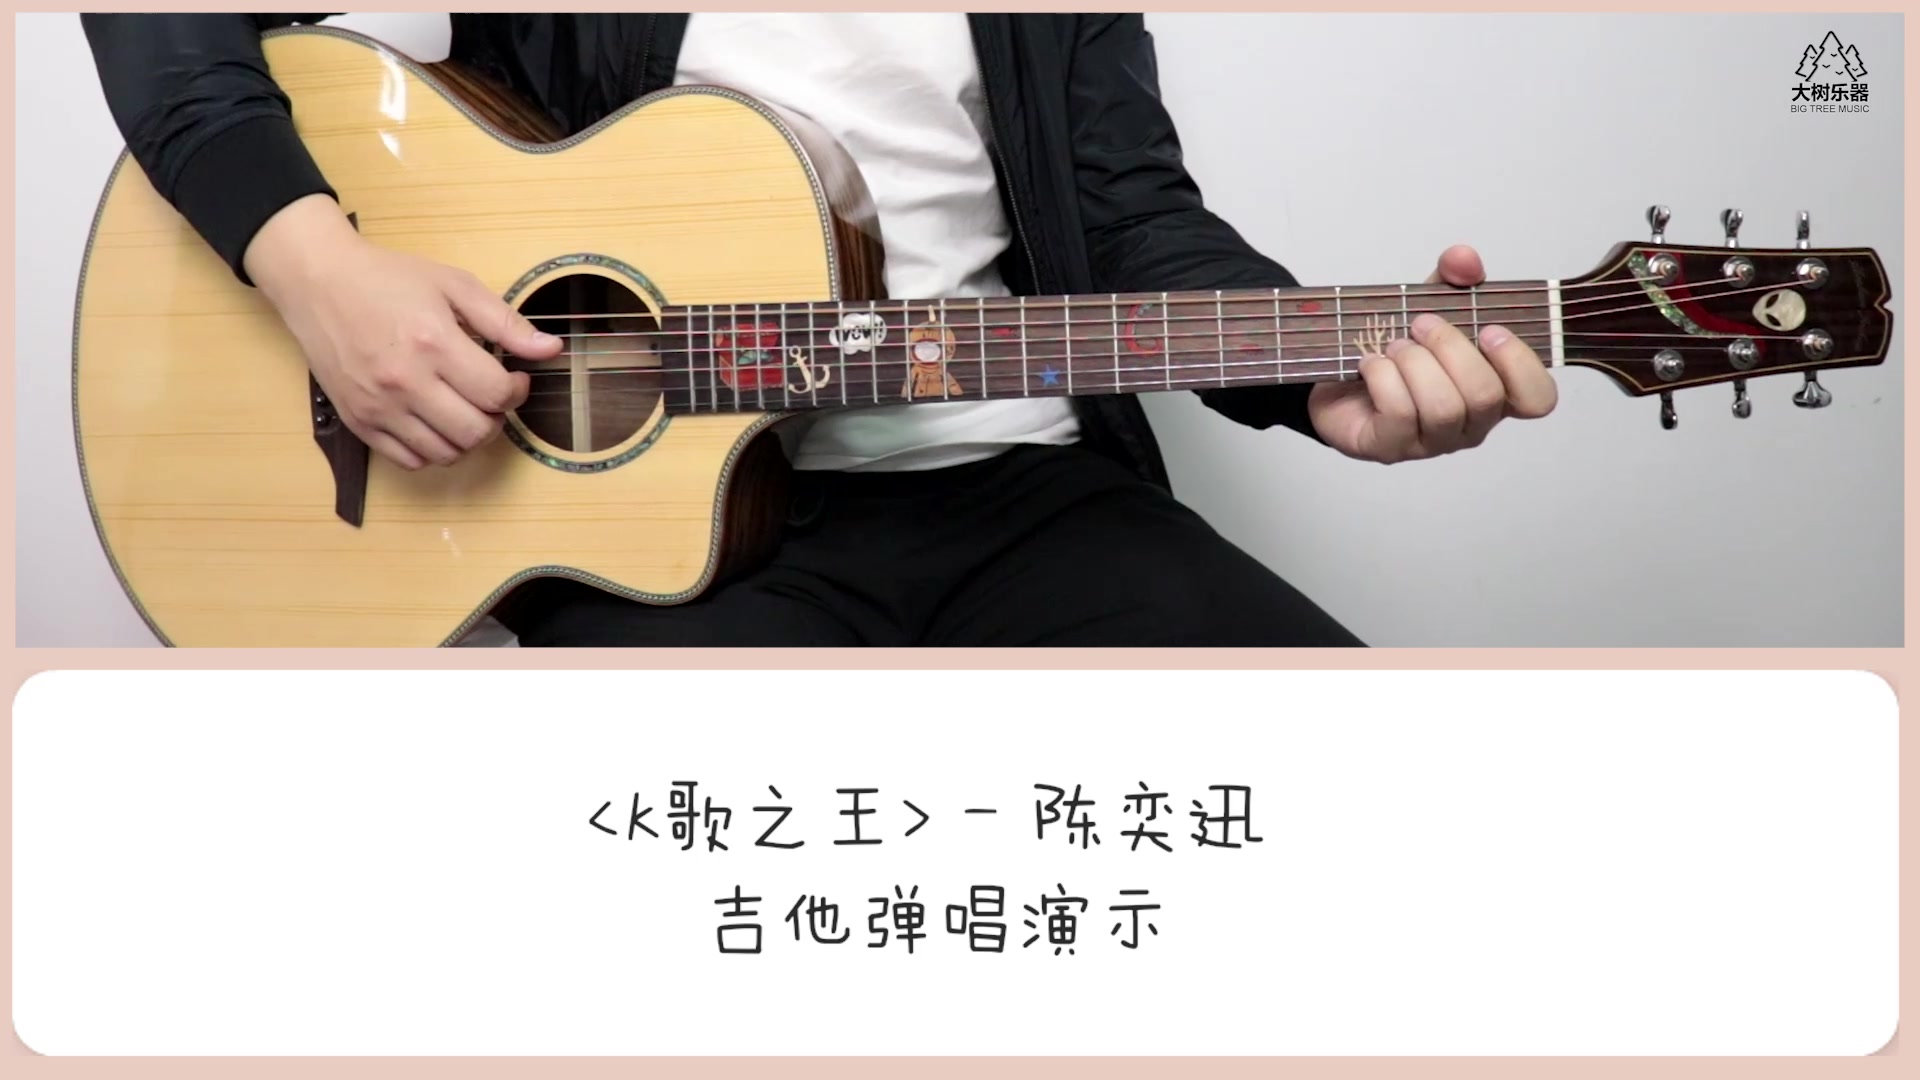 K歌之王吉他视频-封面